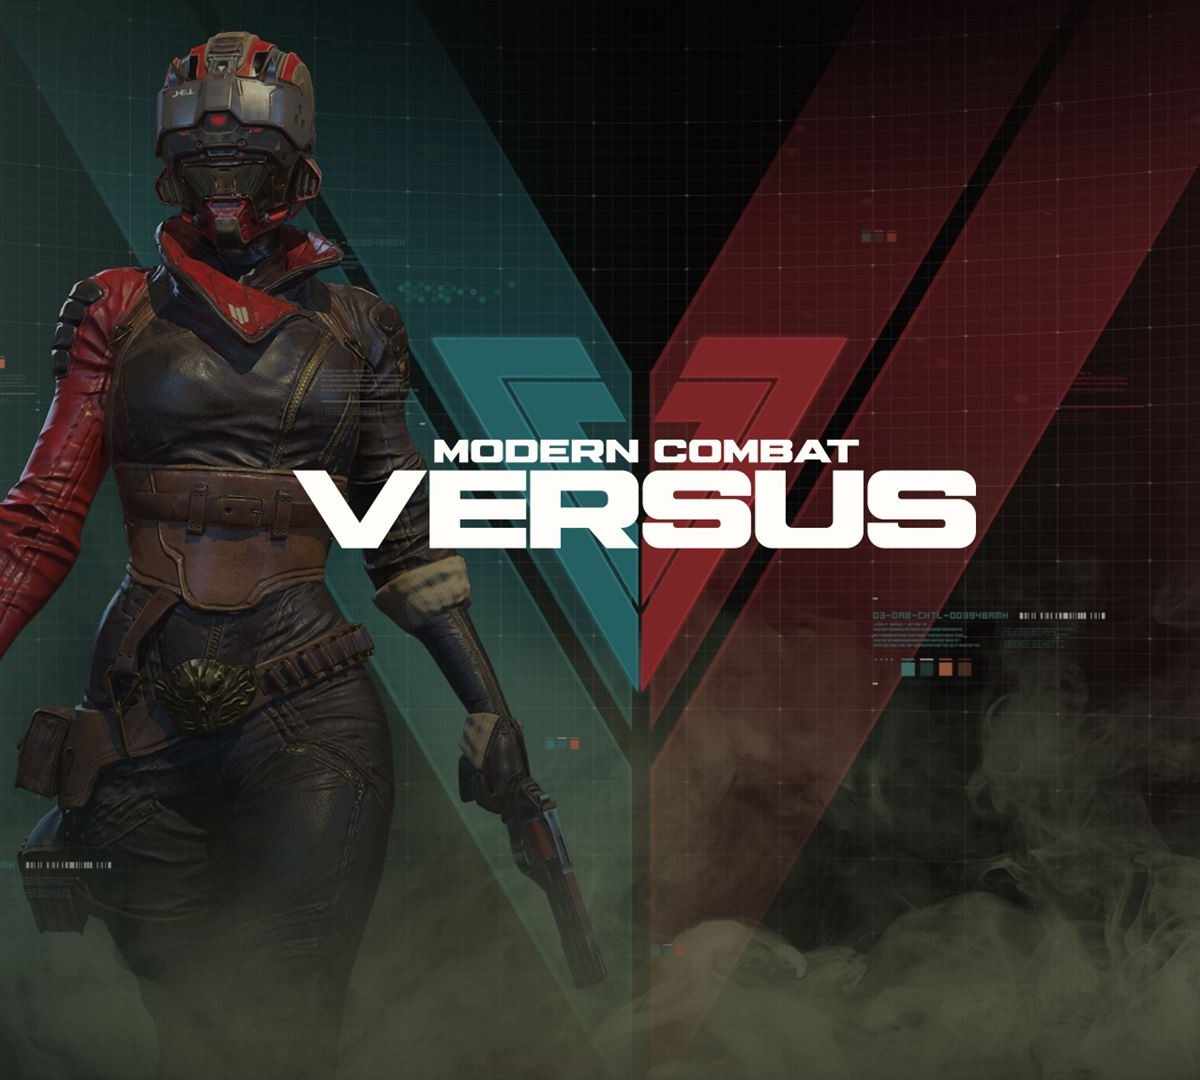 Jogos para Android: Modern Combat, Machine Knight e outros tops da